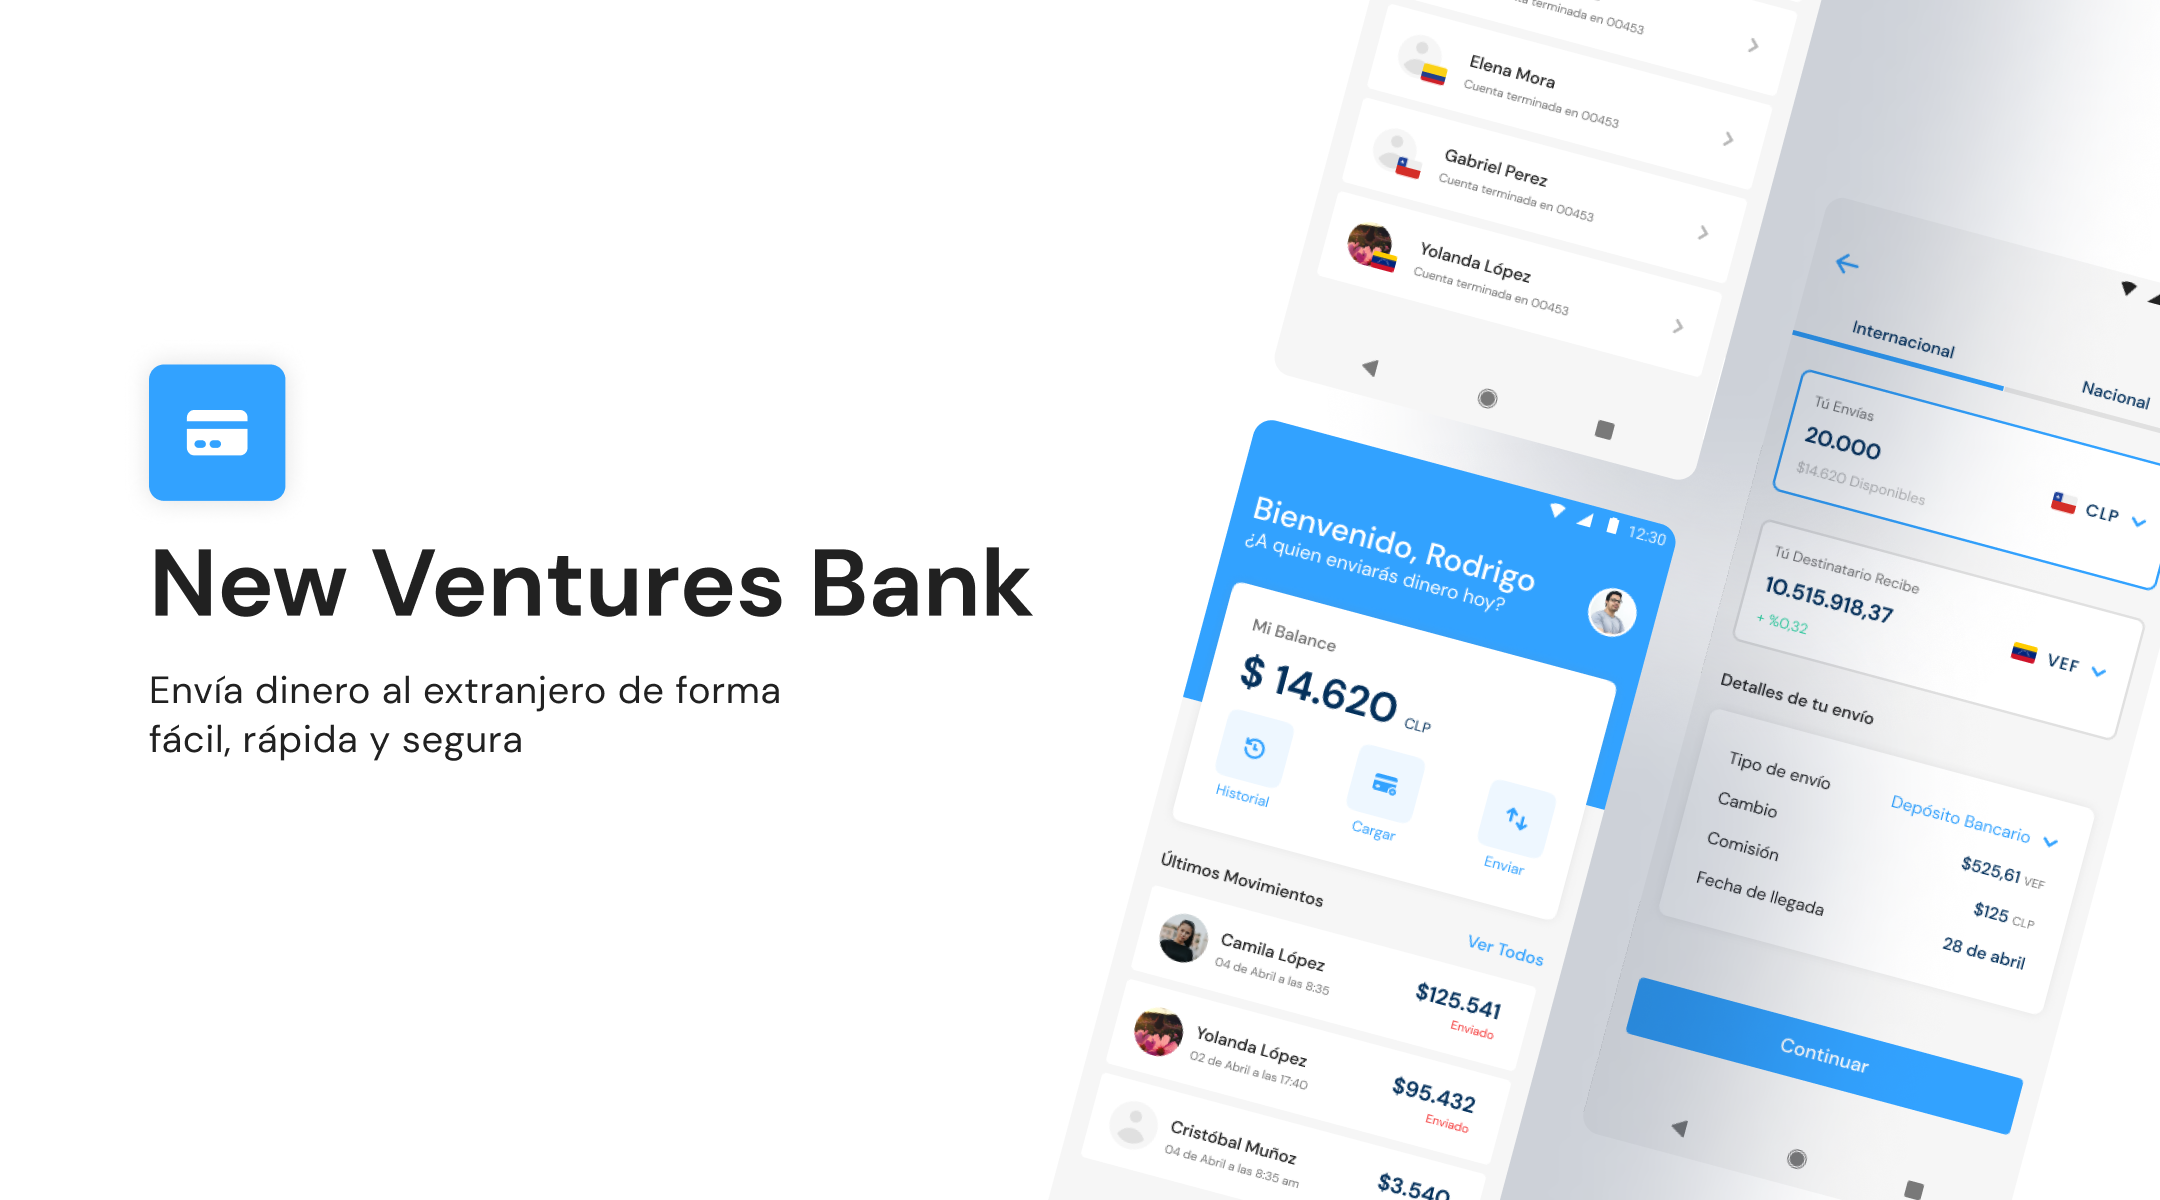 New Ventures Bank